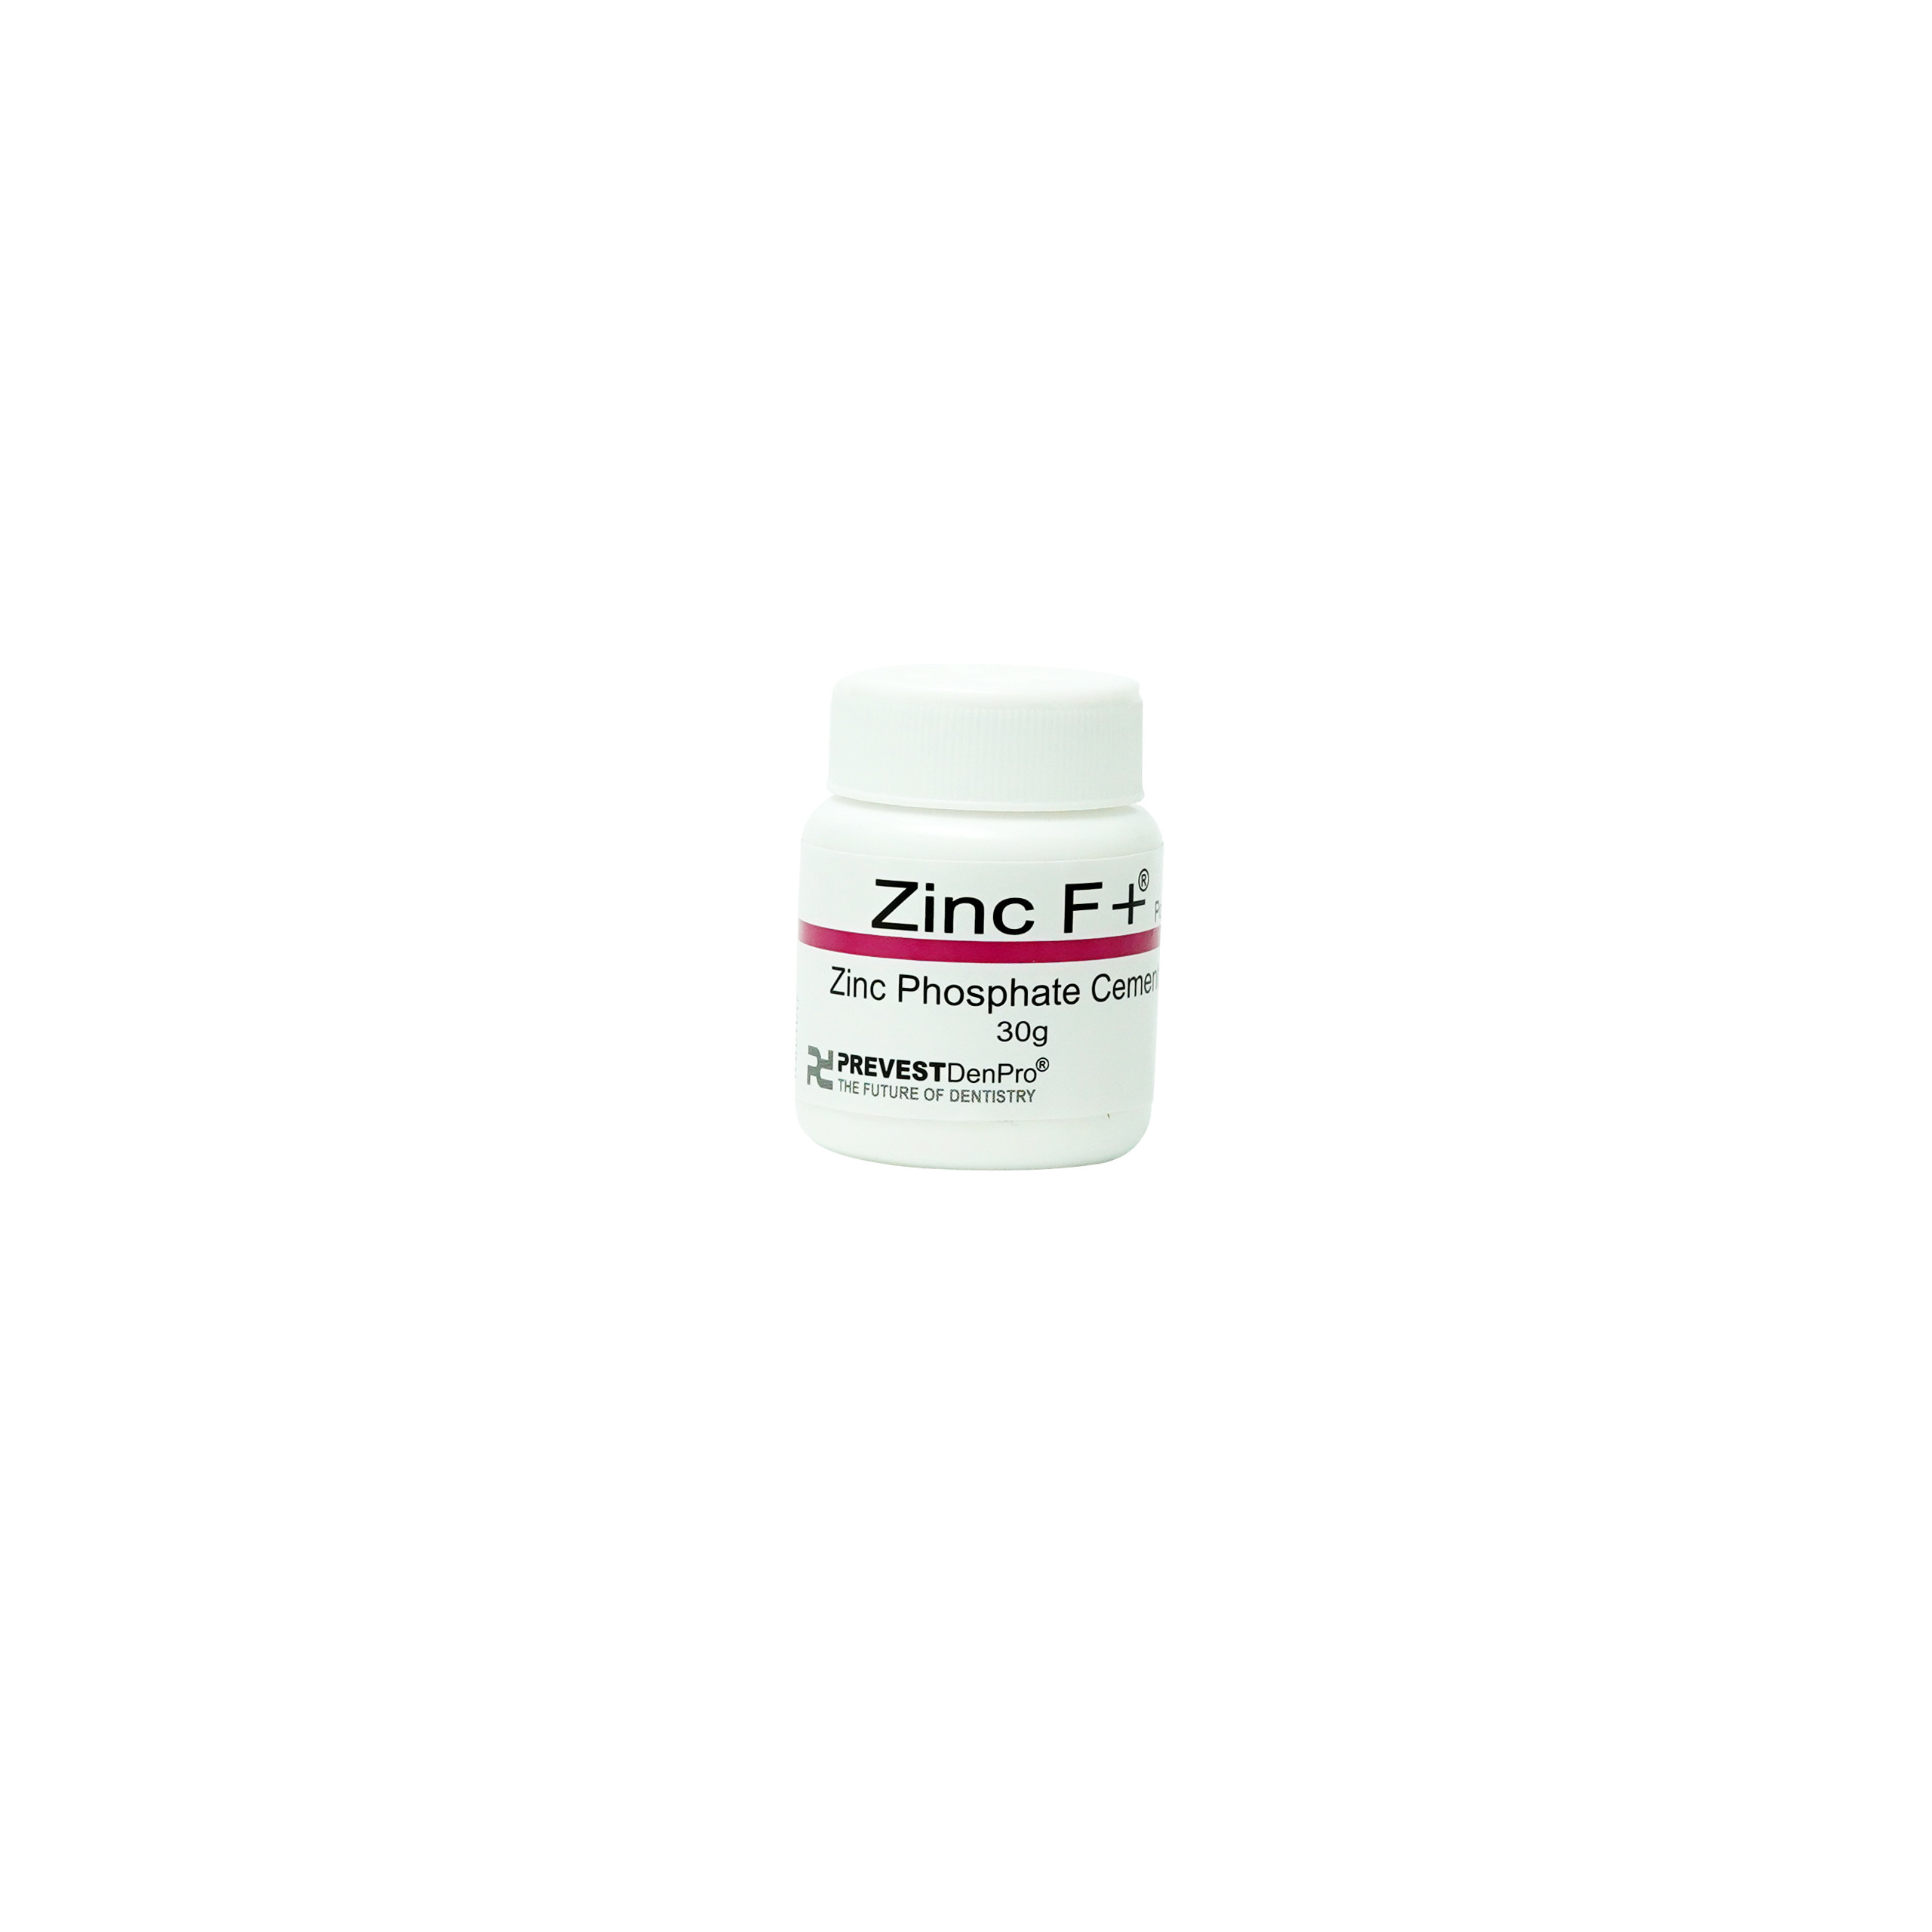 Prevest Denpro Zinc F+ Zinc Phosphate Cement